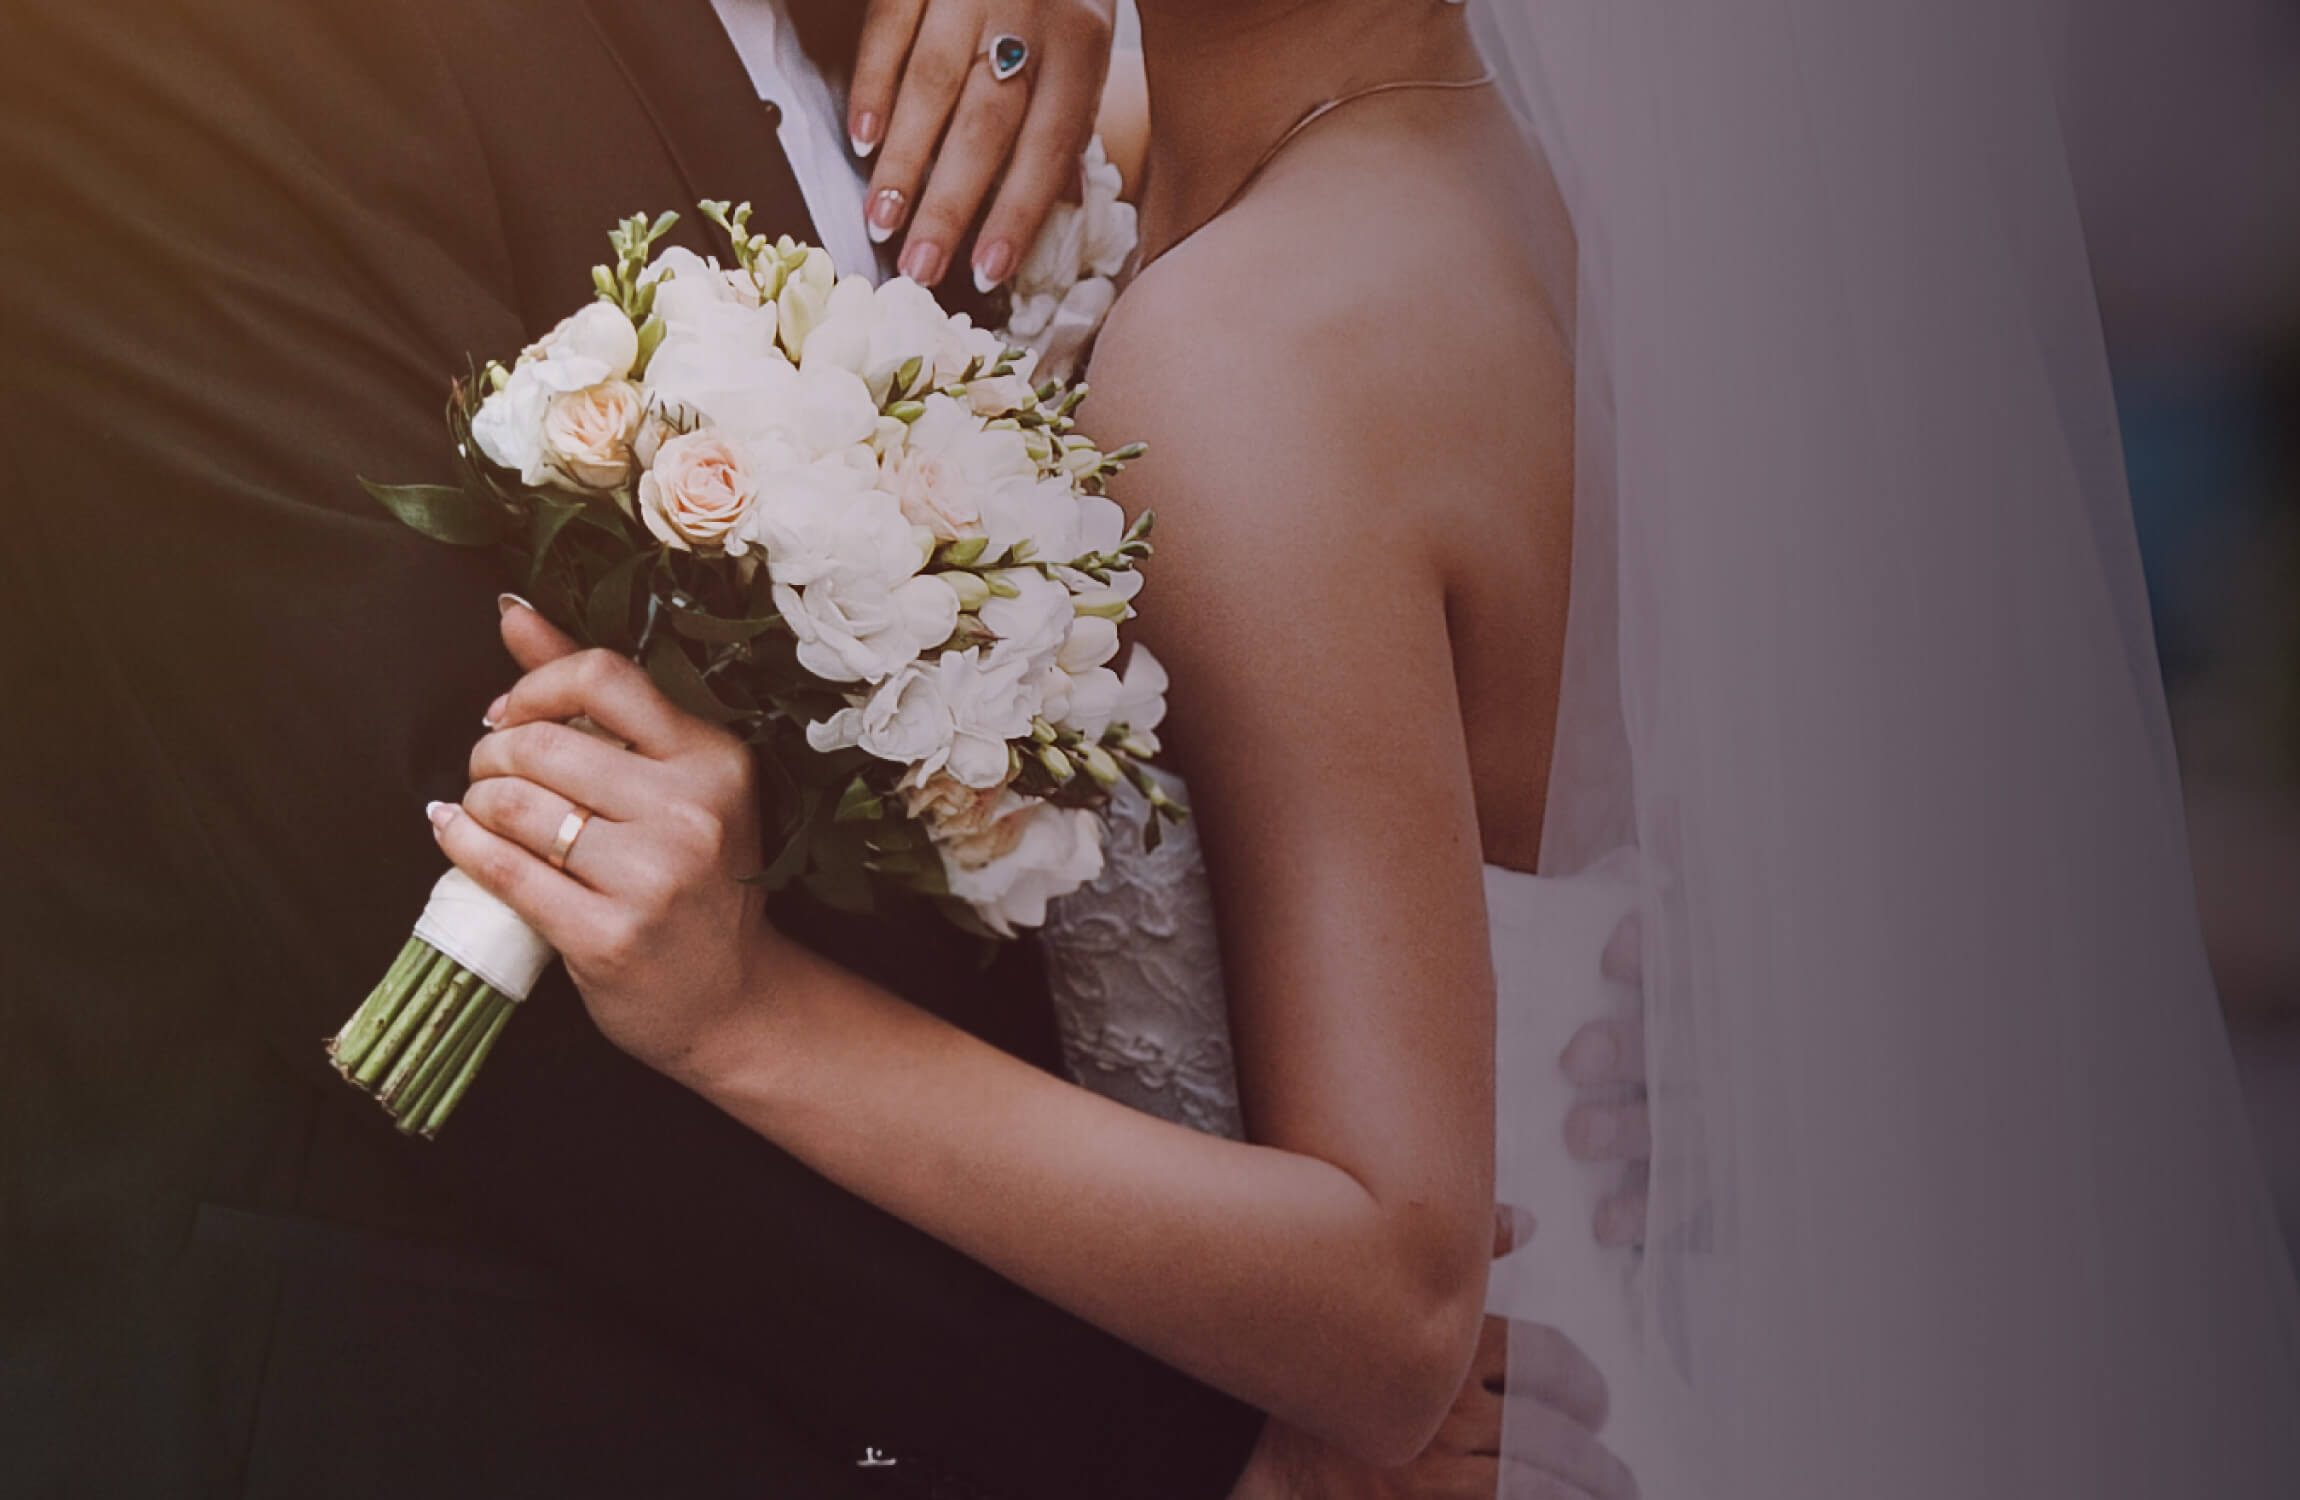 Идеальное меню для свадебного банкета | блог «Золотой берег»